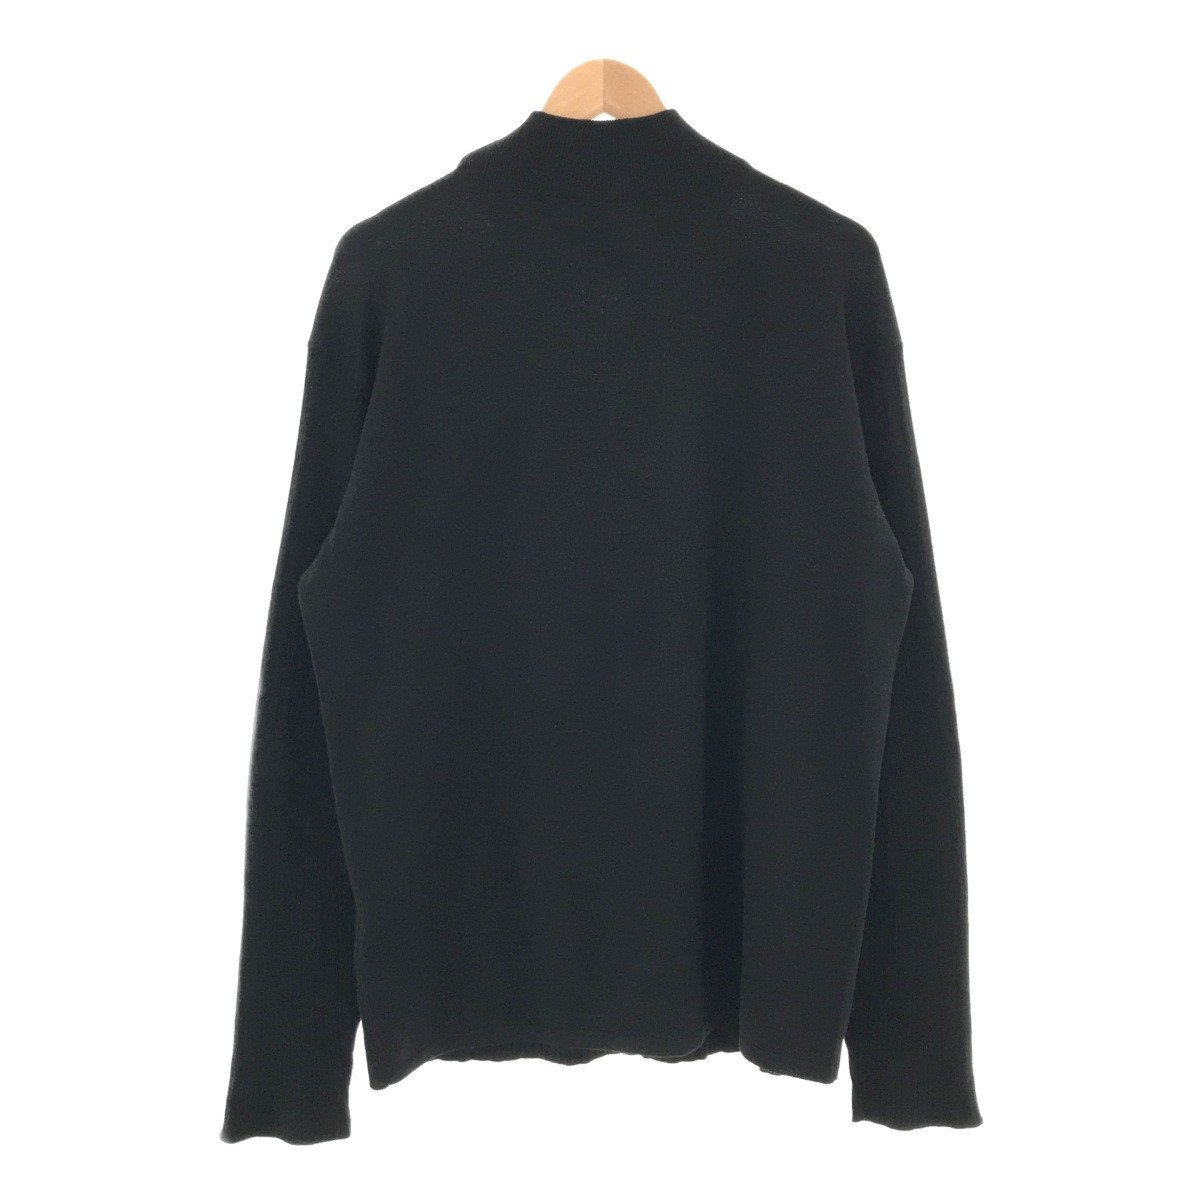 VERSACE Versace [men3440D] вязаный свитер Knit TOPS tops мужской длинный рукав XL черный VA